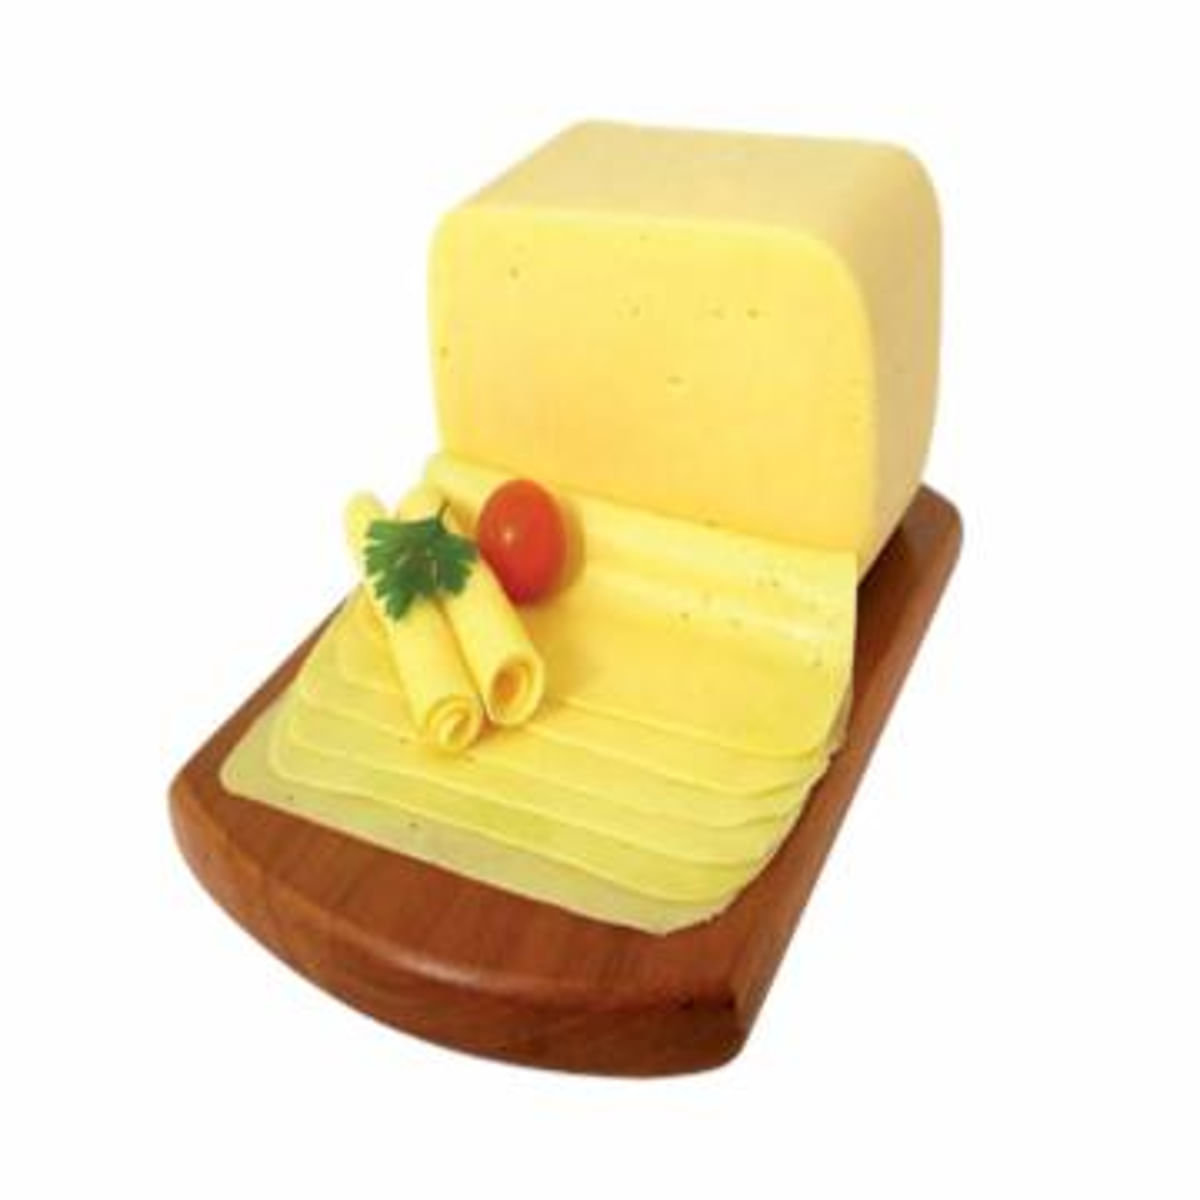 queijo-mussarela-fat-kg-1.jpg